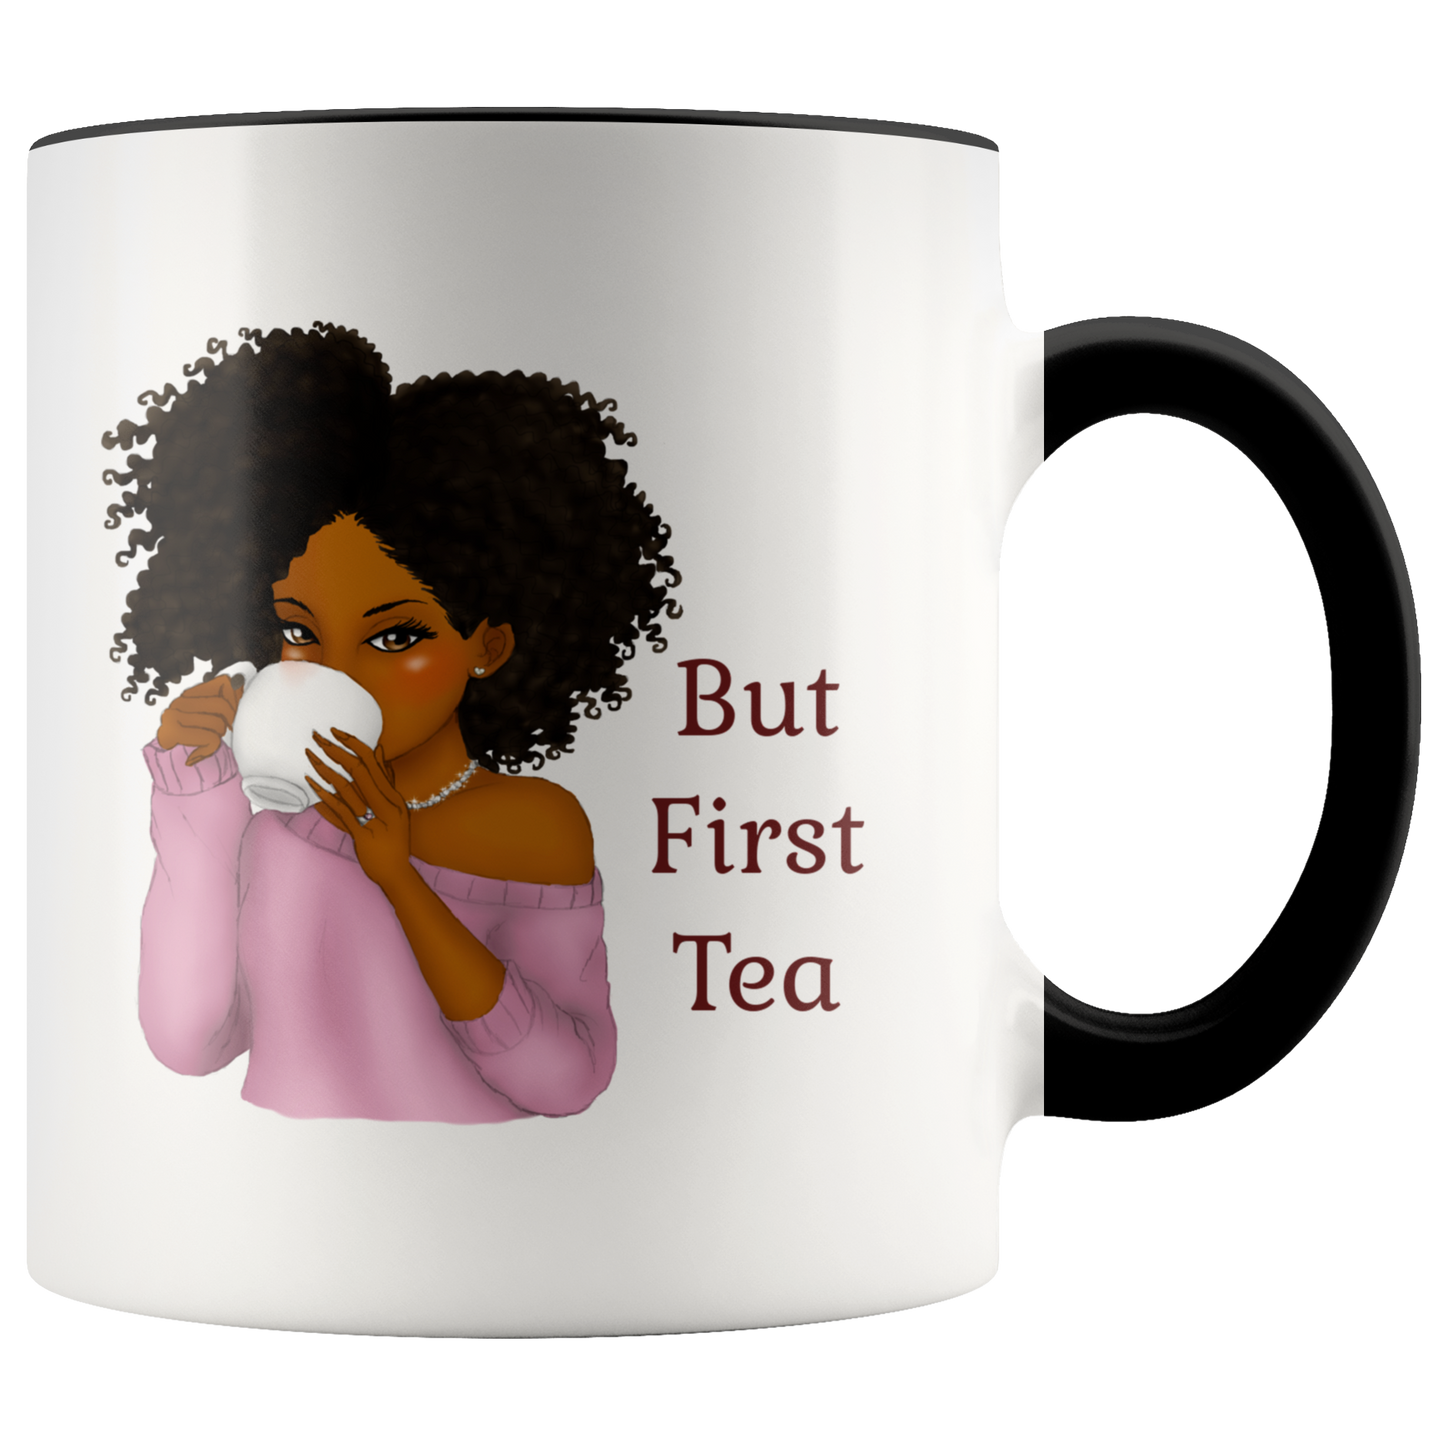 But First Tea, Black Girl Mug, Custom Tea Mug, Tea Cup, Unique Mug, Cute Mug, Custom Mug